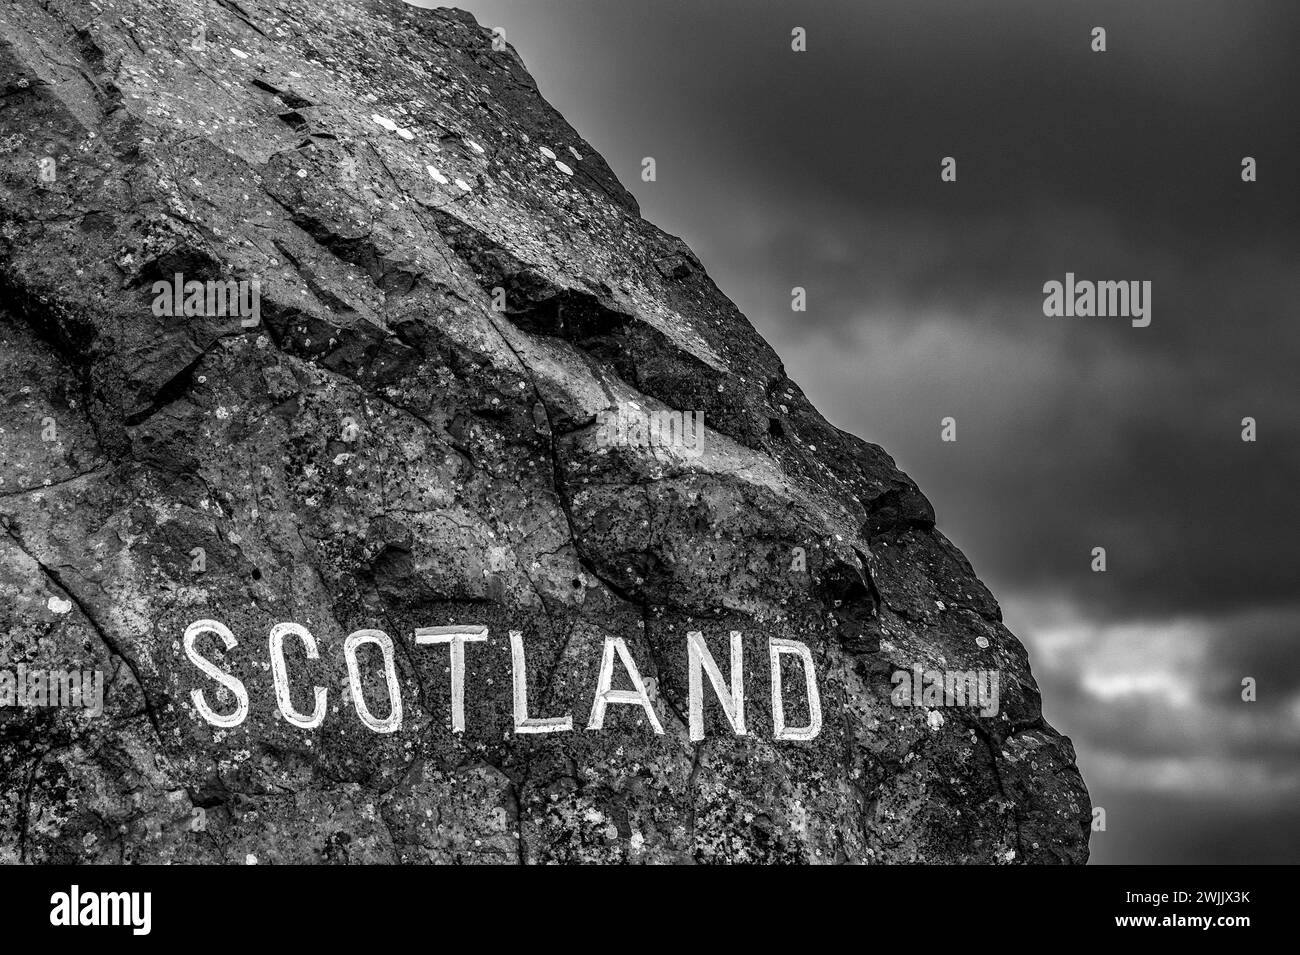 Cart Bar, frontière écossaise / anglaise, Écosse, Northumberland. Images du panneau et de l'énorme rocher à la frontière écossaise, à carter Bat, sur la frontière Banque D'Images